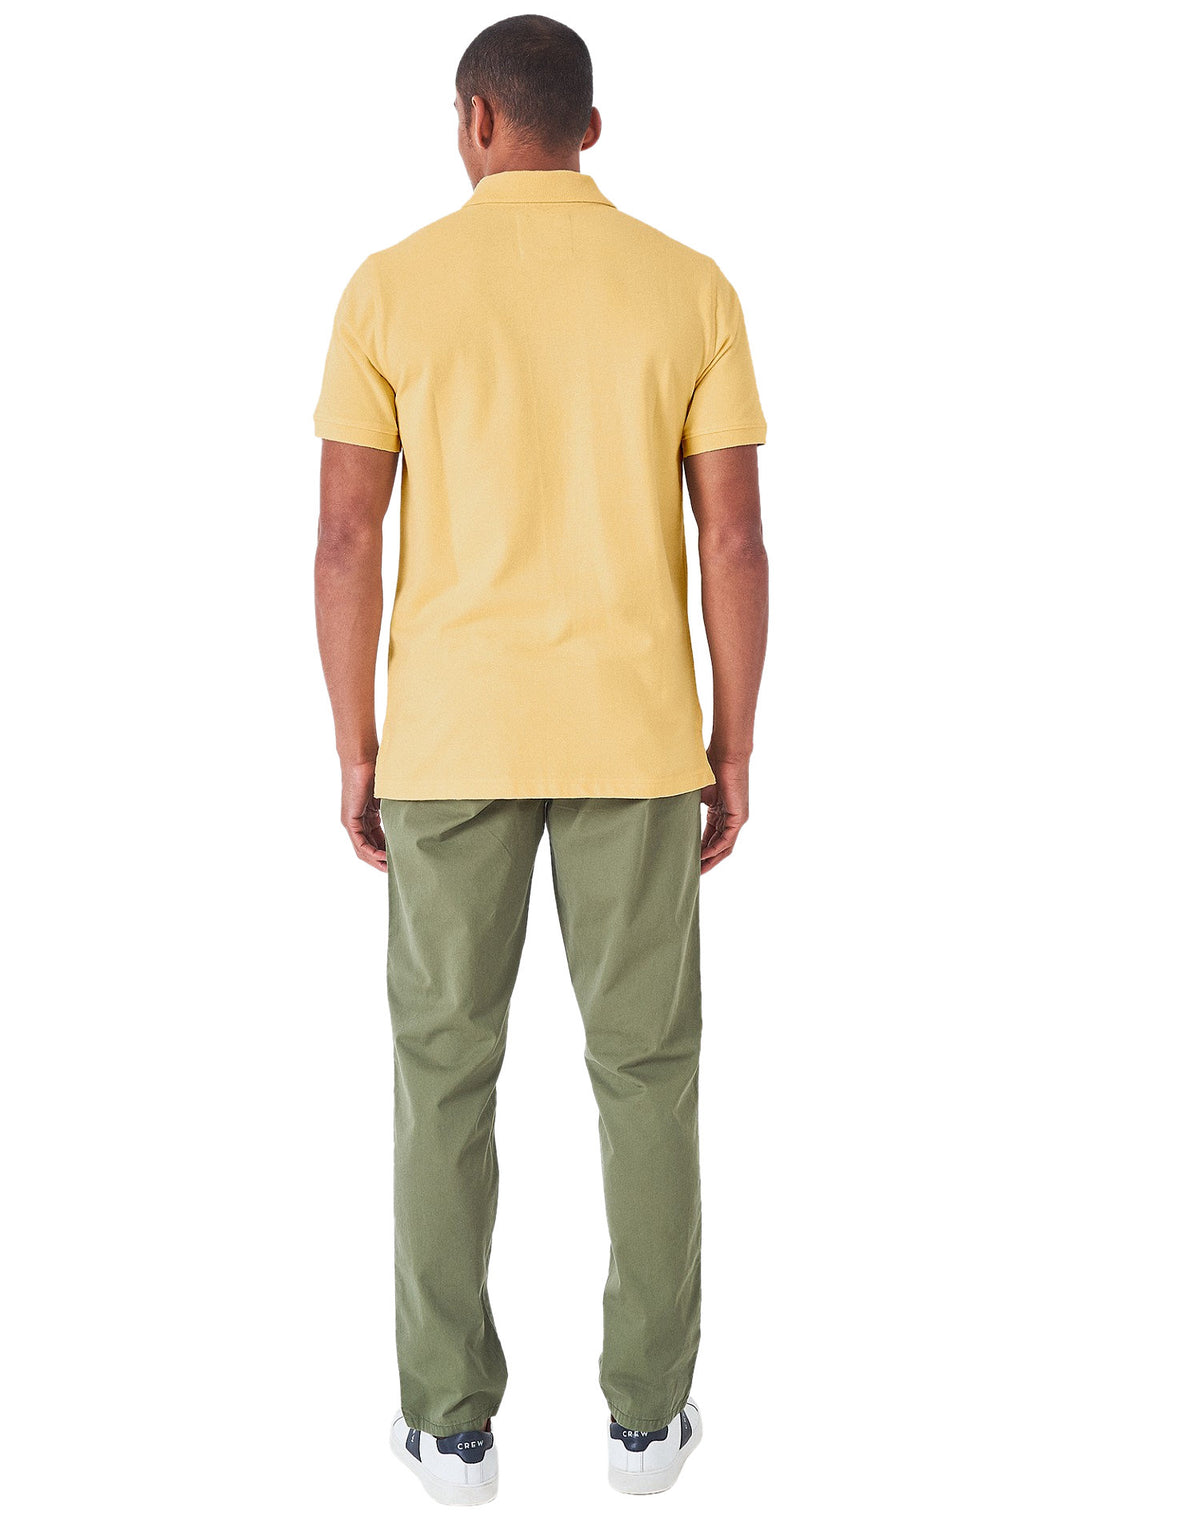 Crew Clothing Mens Pique Polo Shirt 'Classic Pique Polo' - Short Sleeved, 03, Mke002, Golden Haze